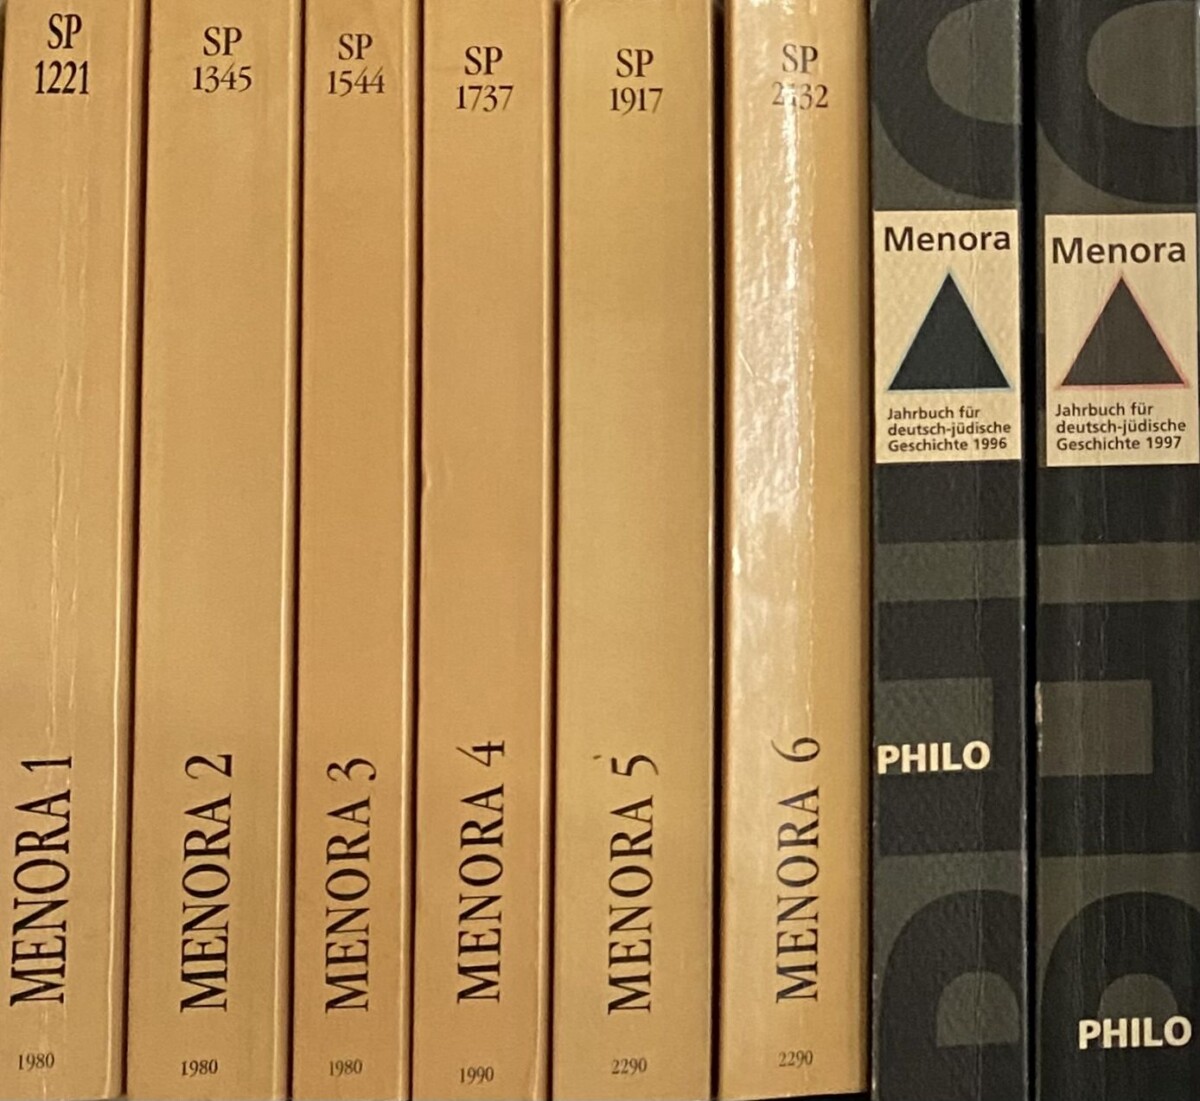 Menora. Jahrbuch für deutsch-jüdische Geschichte 1990-1997 (8-volume set) - Schoeps, Julius H. a.o. (ed.)